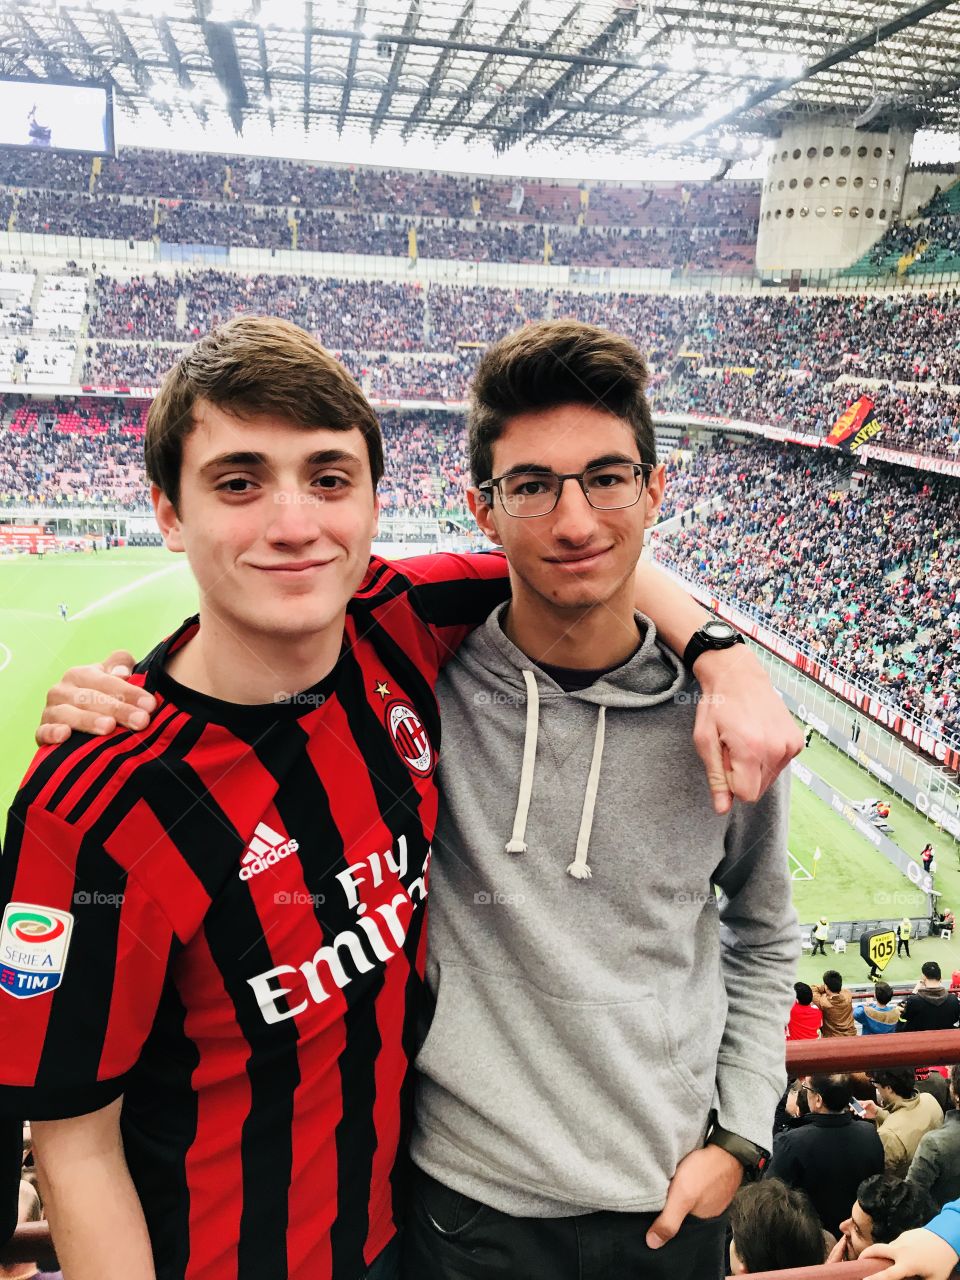 Milan-Napoli game at San Siro Stadium